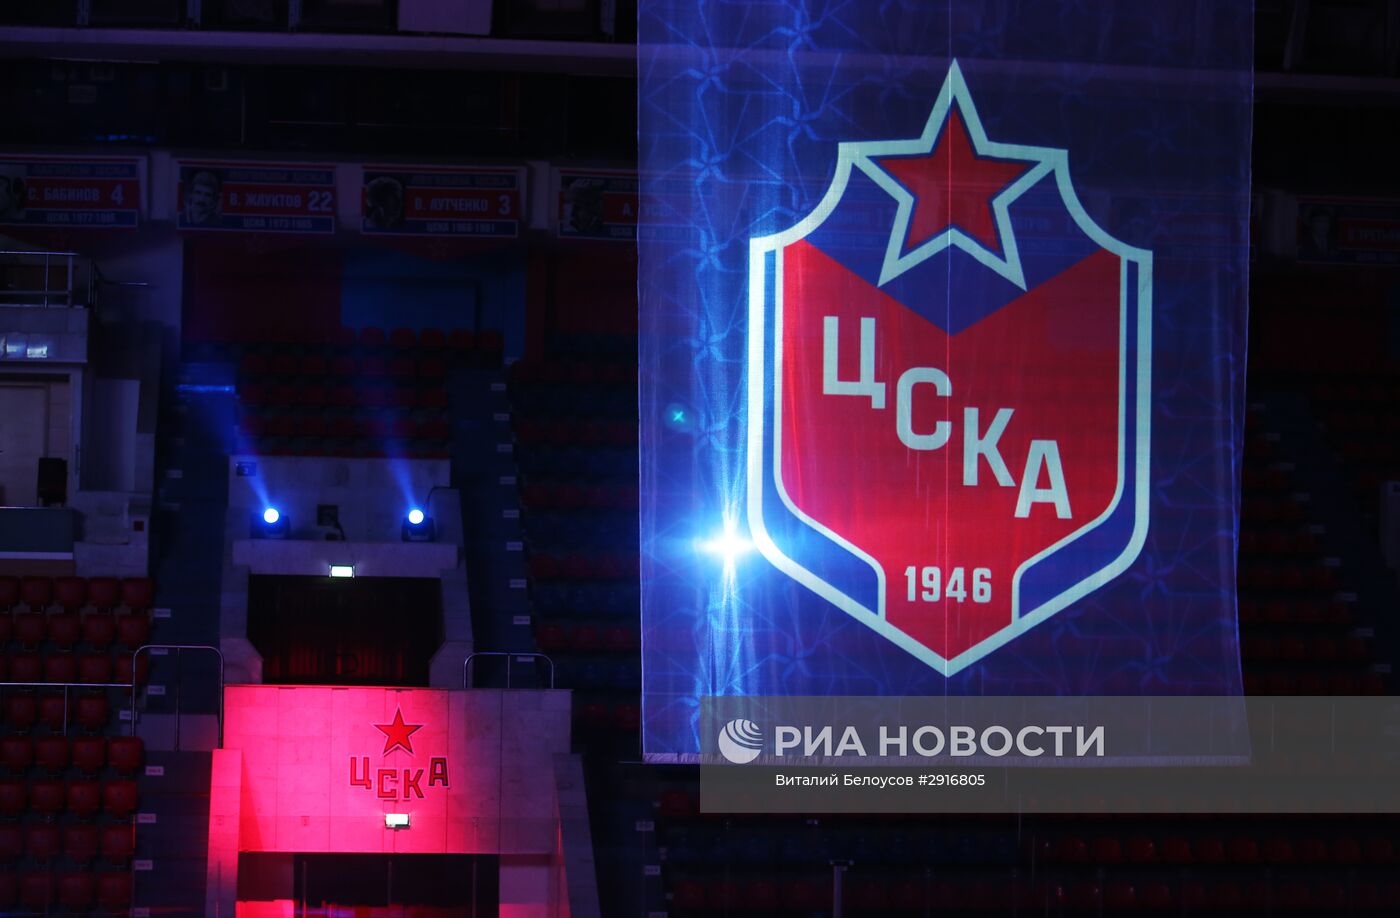 Хоккей. Презентация ПХК ЦСКА сезона 2016/17